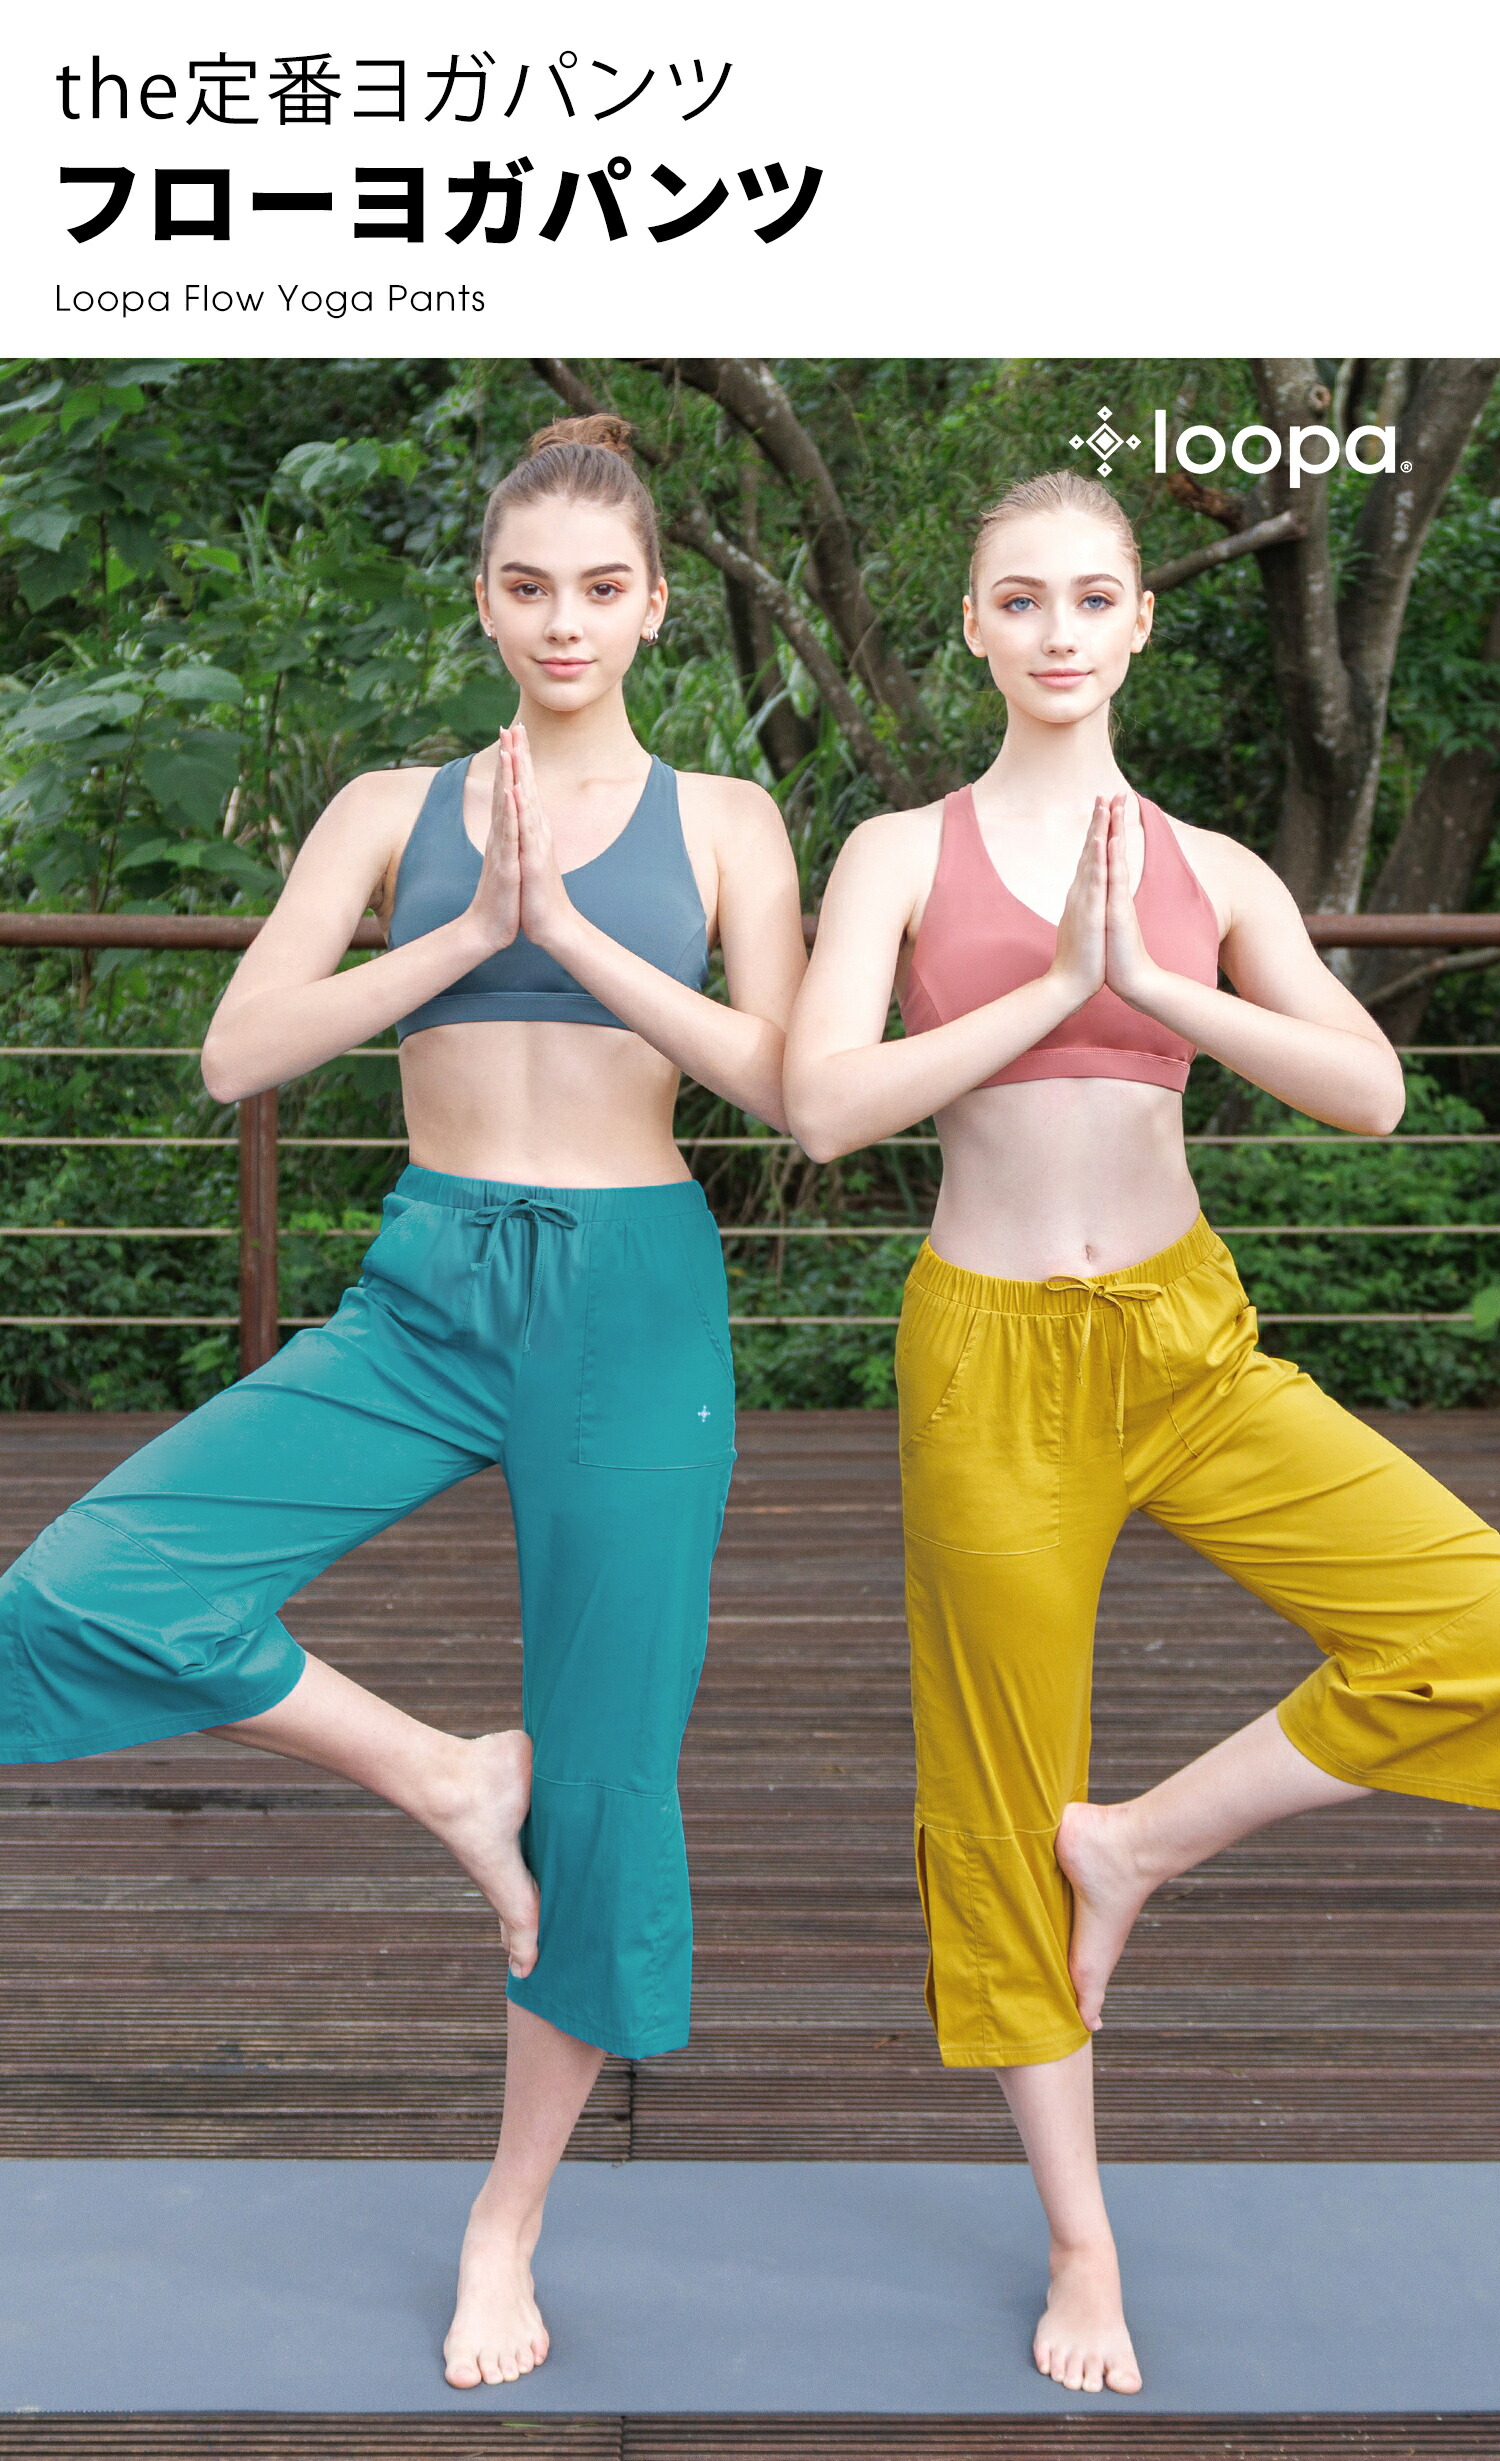 [Loopa] ルーパフローヨガパンツ(七分丈) Flow Yoga PANTS (three-quarter LENGTH) - ロイヤルブルー / L 11-13号